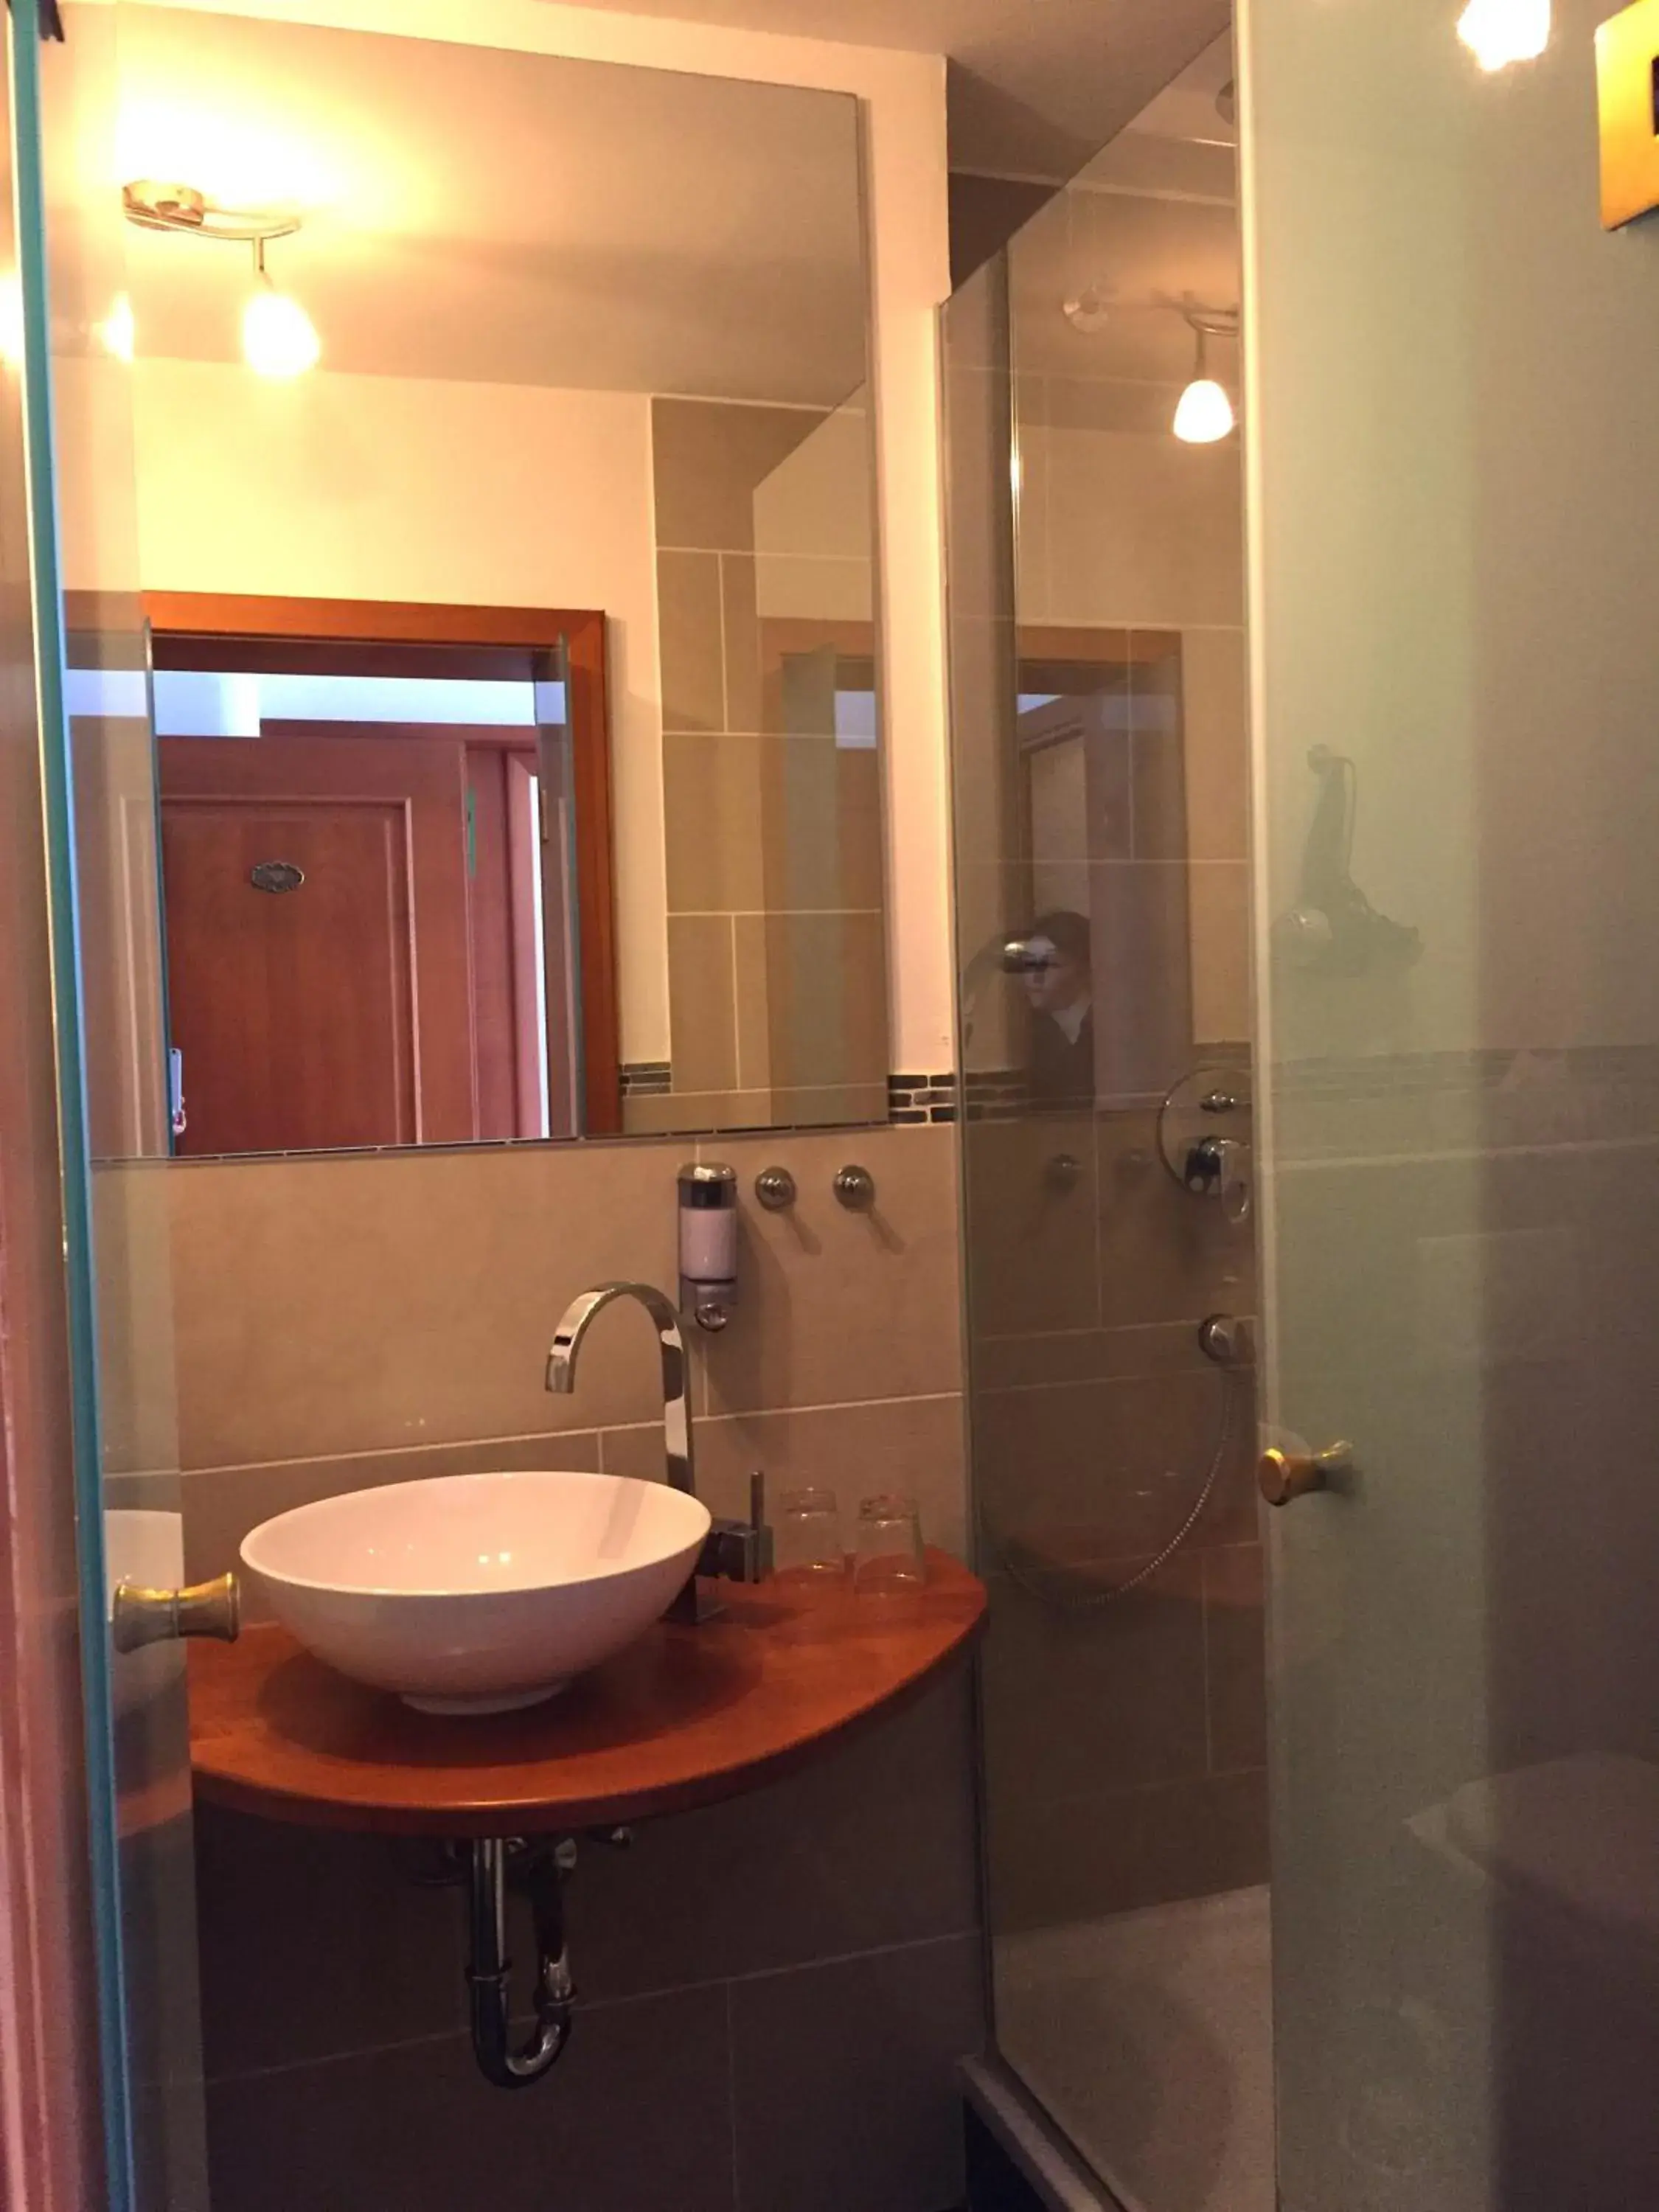 Photo of the whole room, Bathroom in Hotel Zur Schönen Aussicht